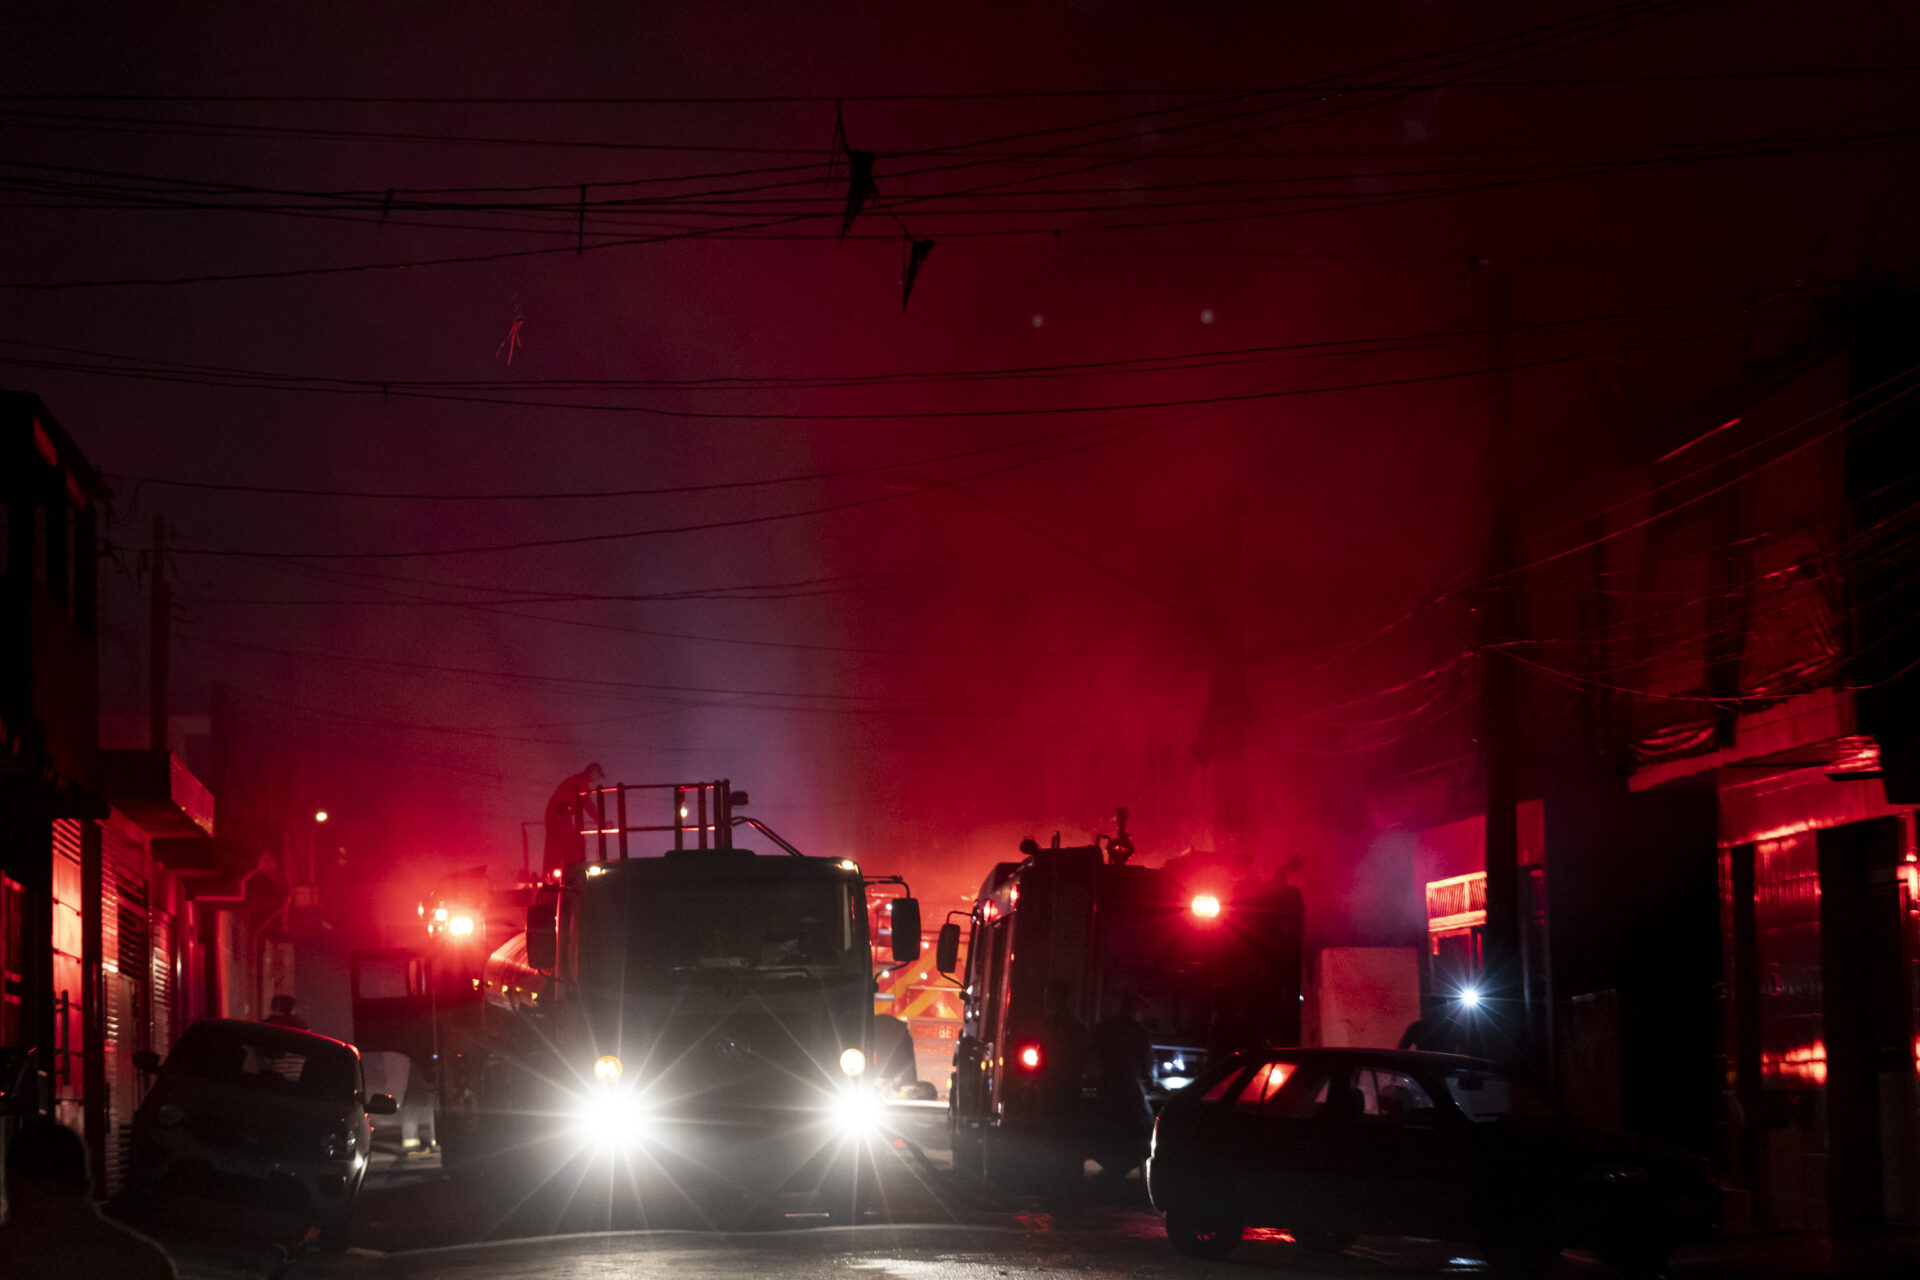 Incêndio de grandes proporções destrói galpões em Guarulhos